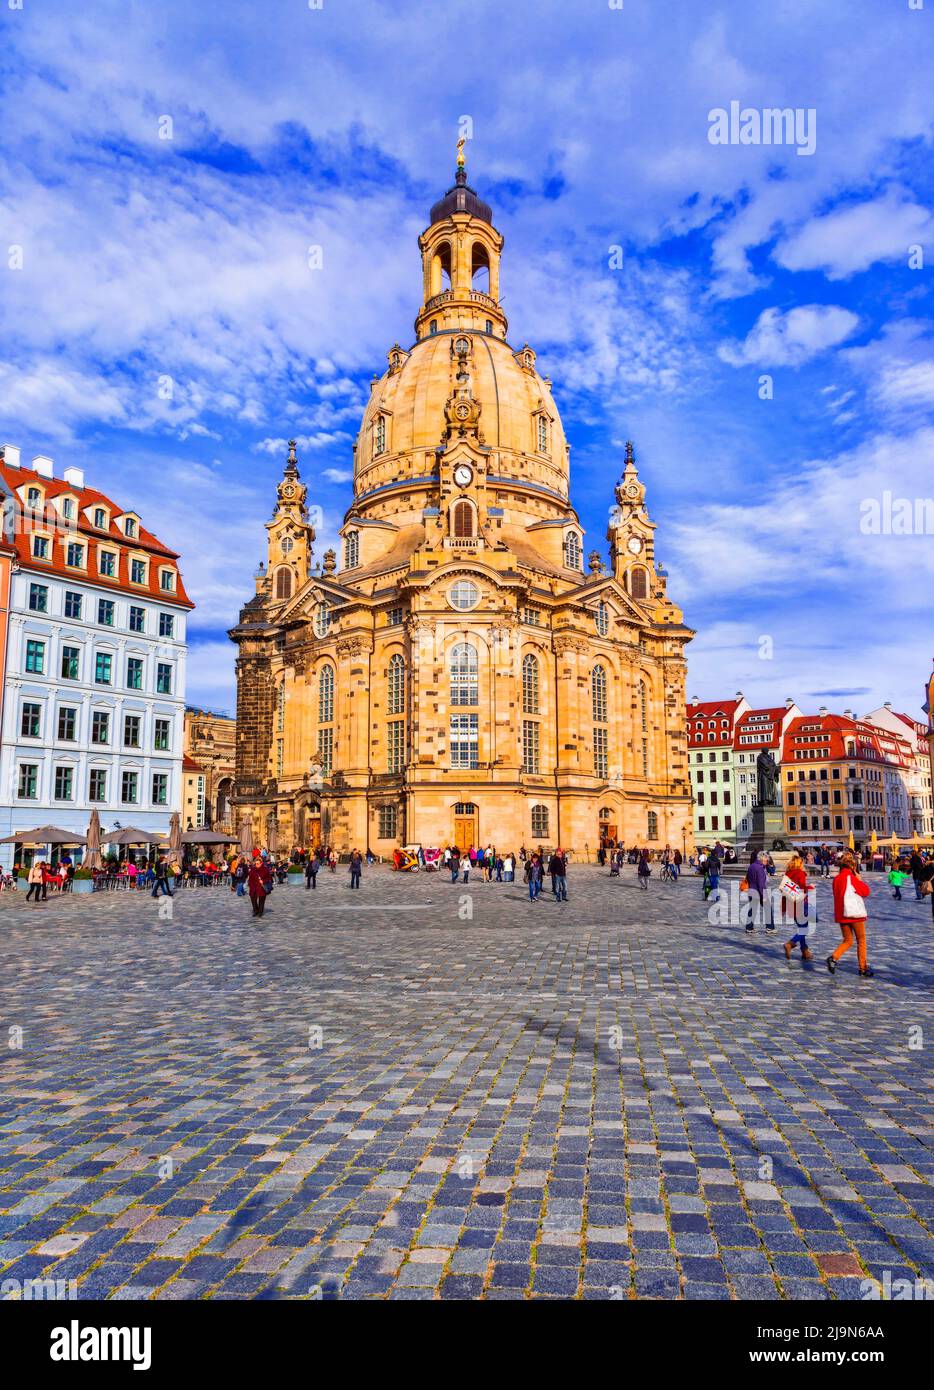 Centro de la plaza de la ciudad de Dresden y la catedral barroca Nuestra Señora Frauenkirche, Alemania Foto de stock